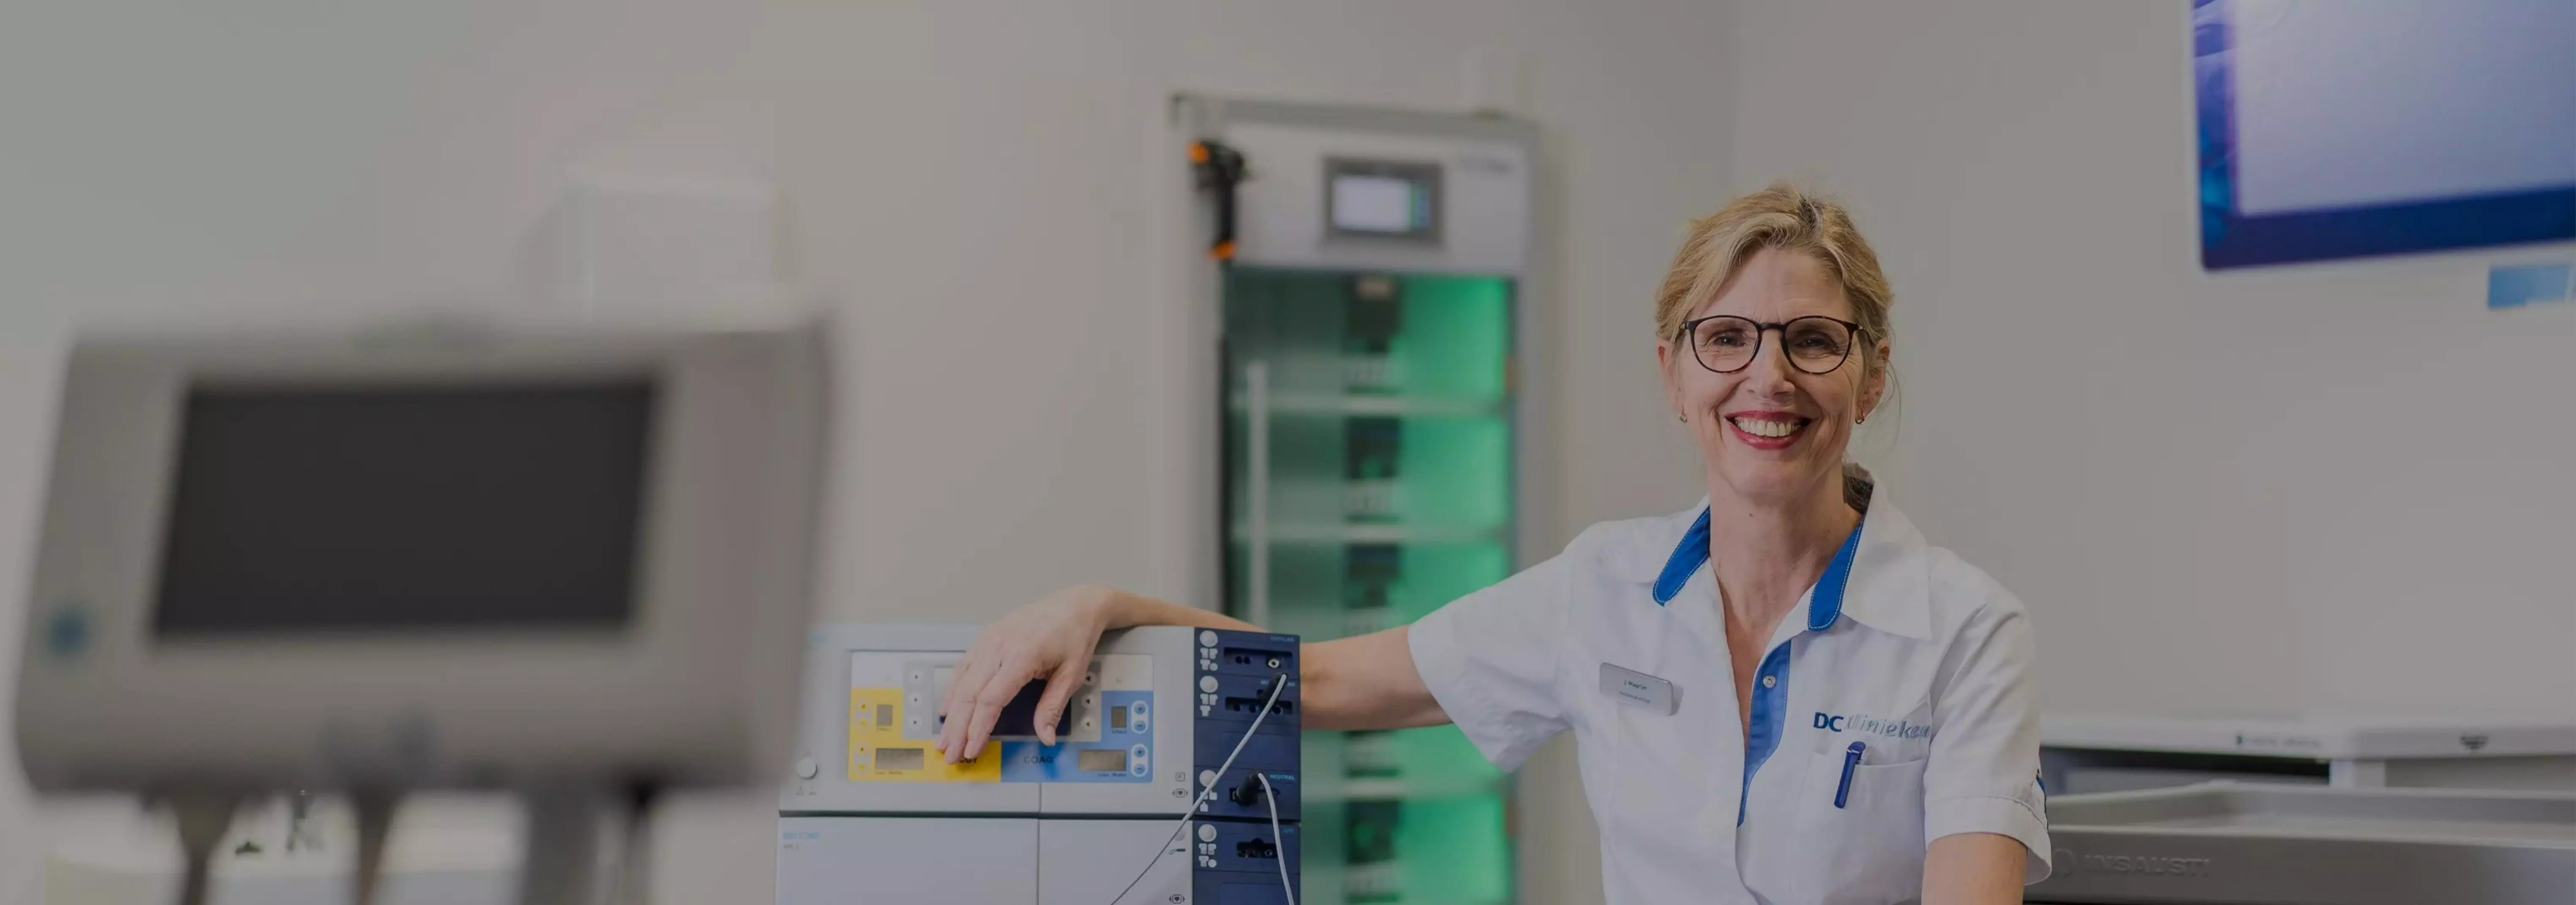 endoscopieverpleegkundige Jose magrijn leunt met een stralende glimlach tegen een MDL apparaat aan